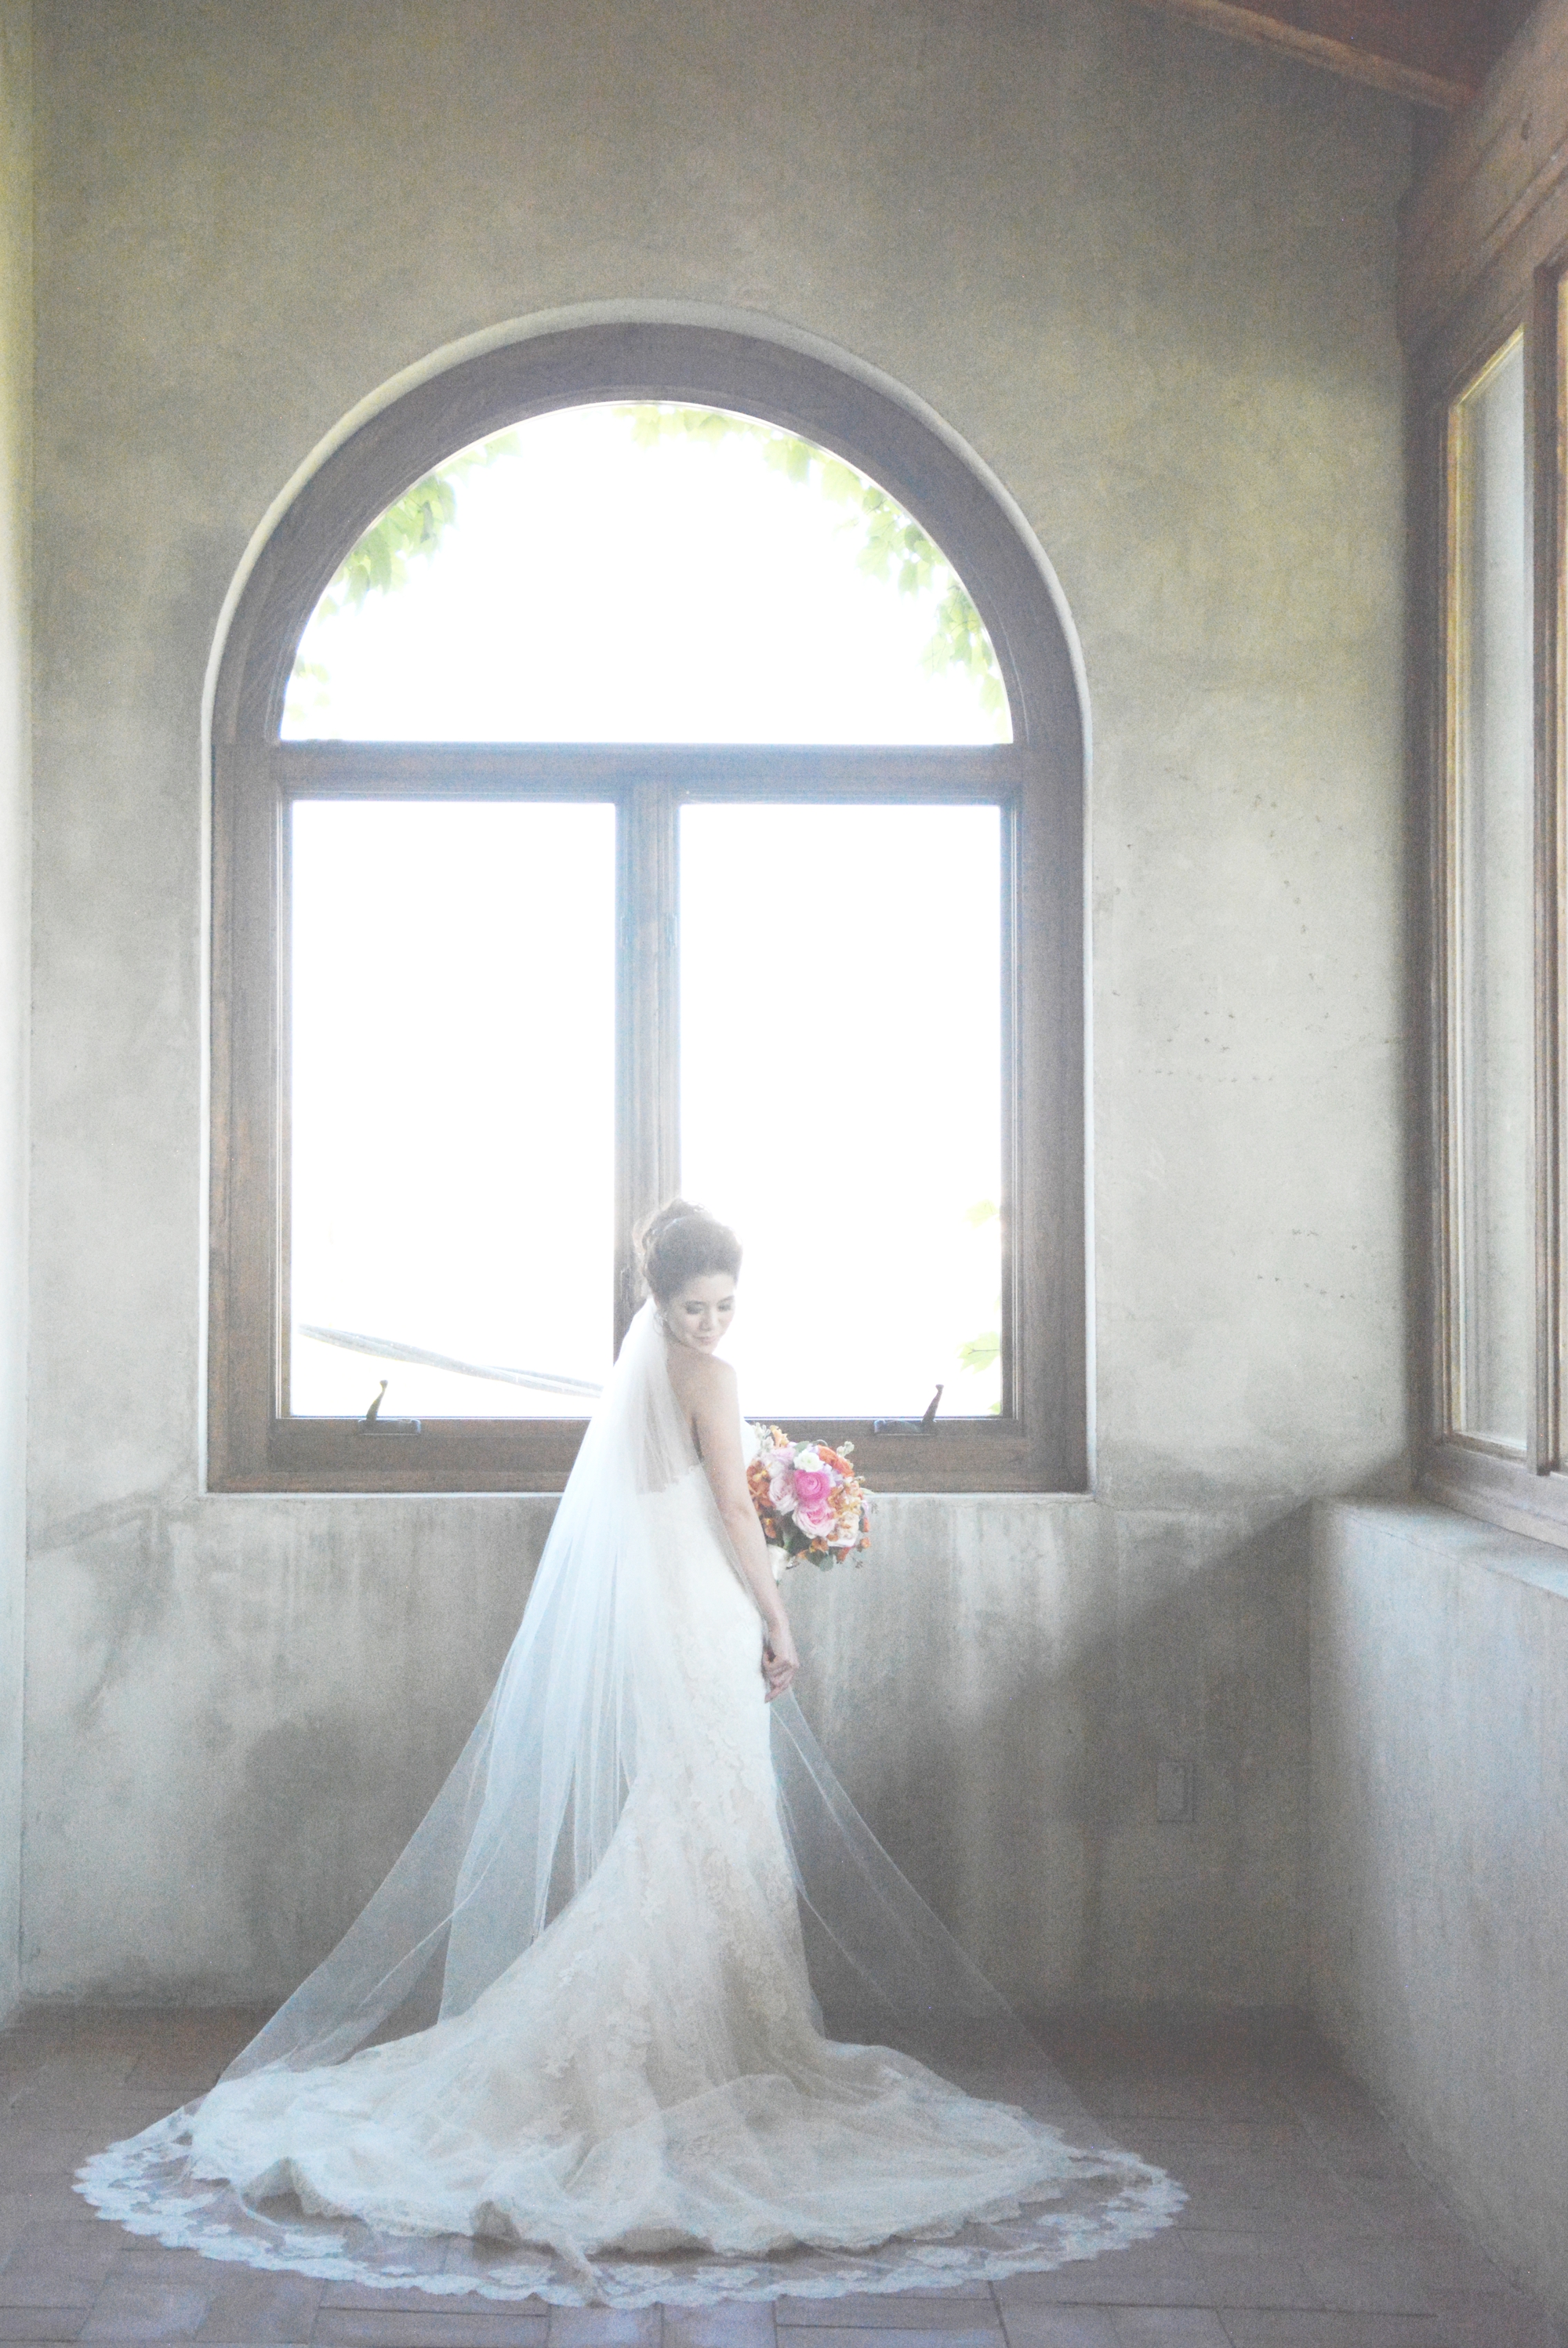 Summerour Studio Wedding Photography - Six Hearts Photography014